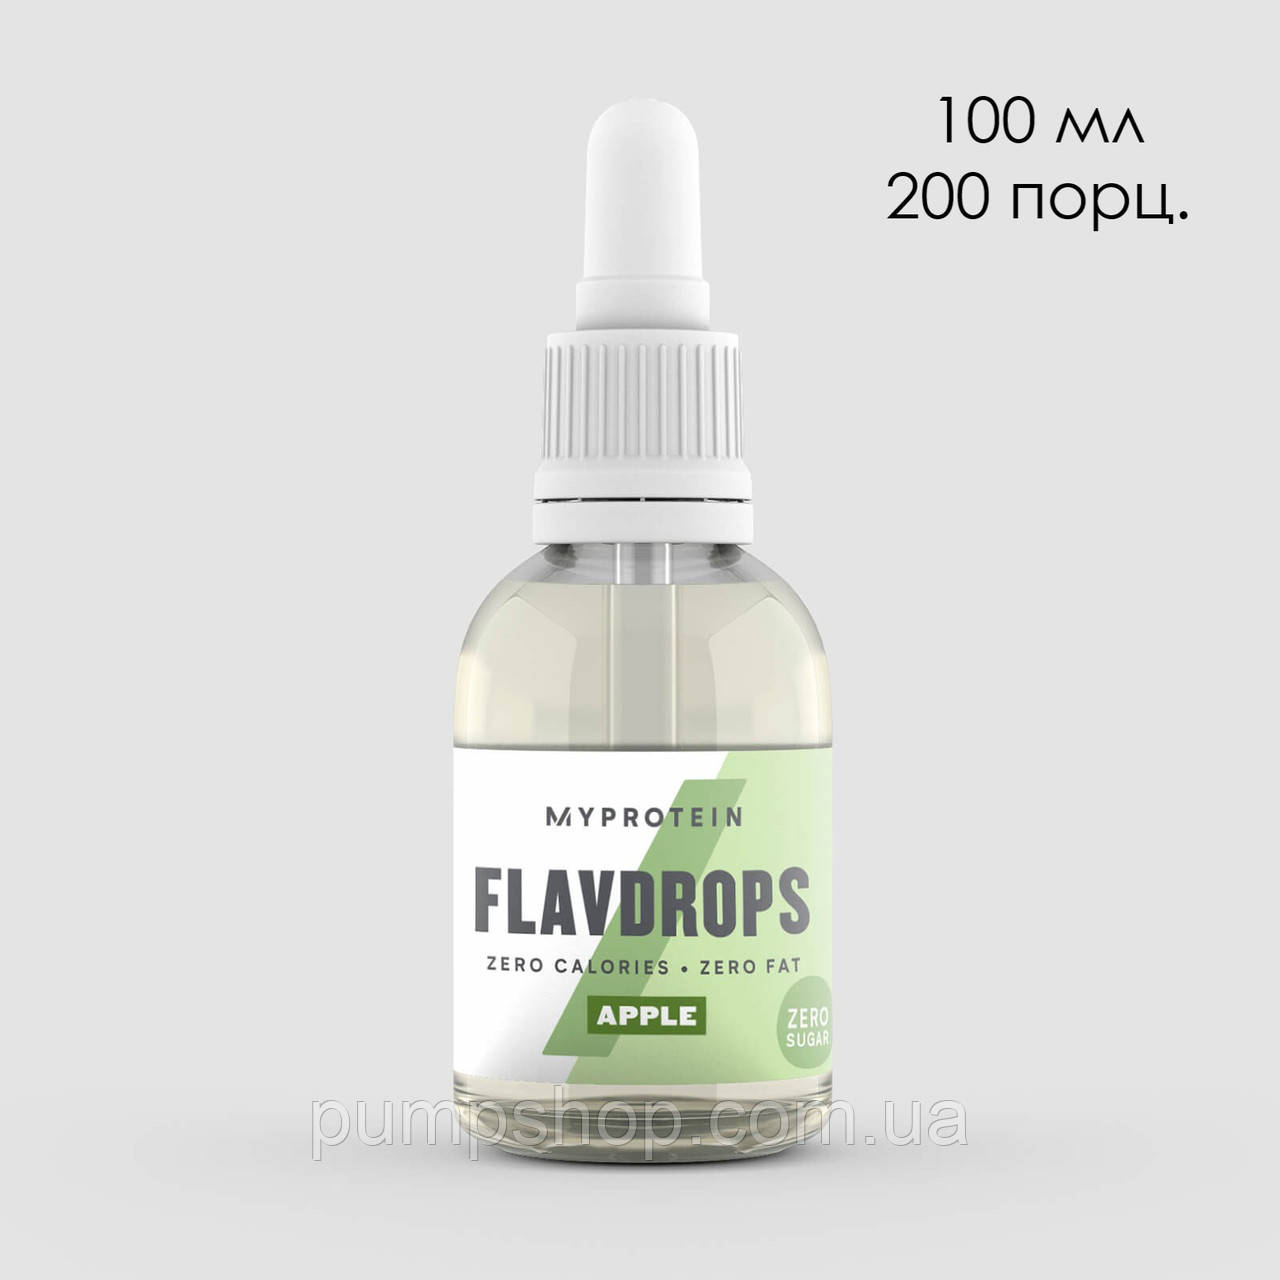 Подсластитель ноль каллорий MyProtein FlavDrops 100 мл (200 порц.)Нет в наличии